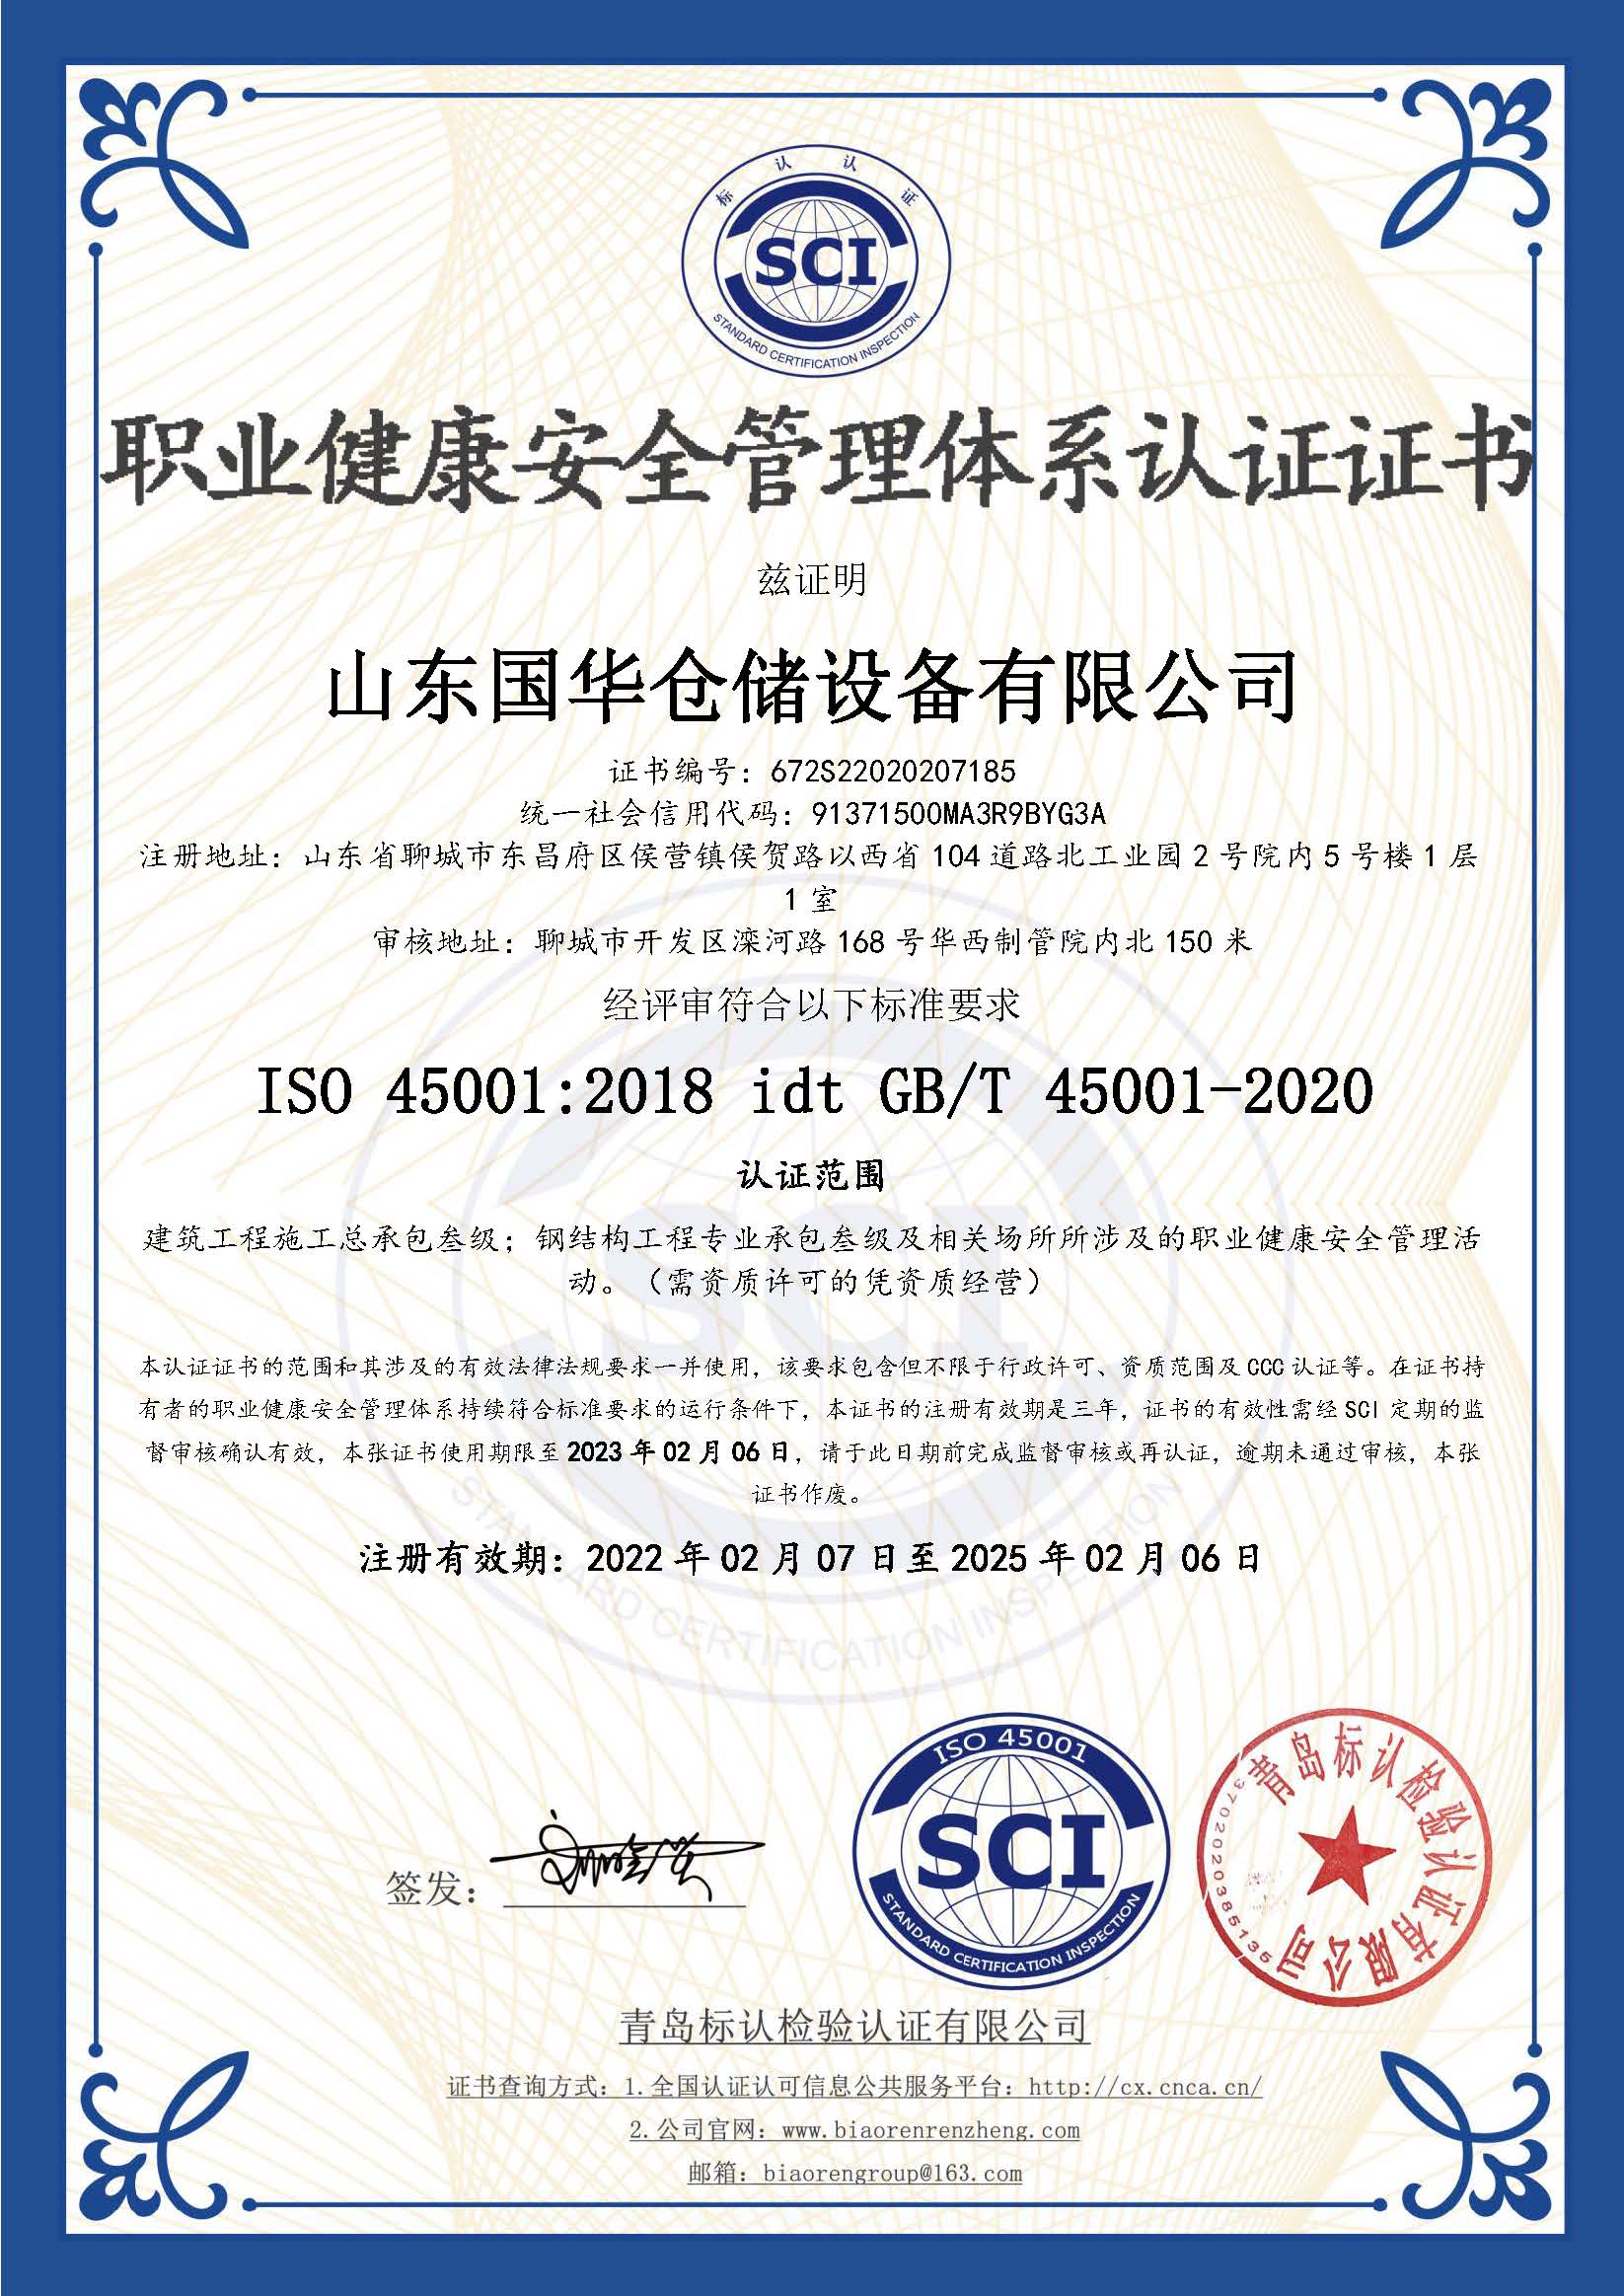 晋中钢板仓职业健康安全管理体系认证证书